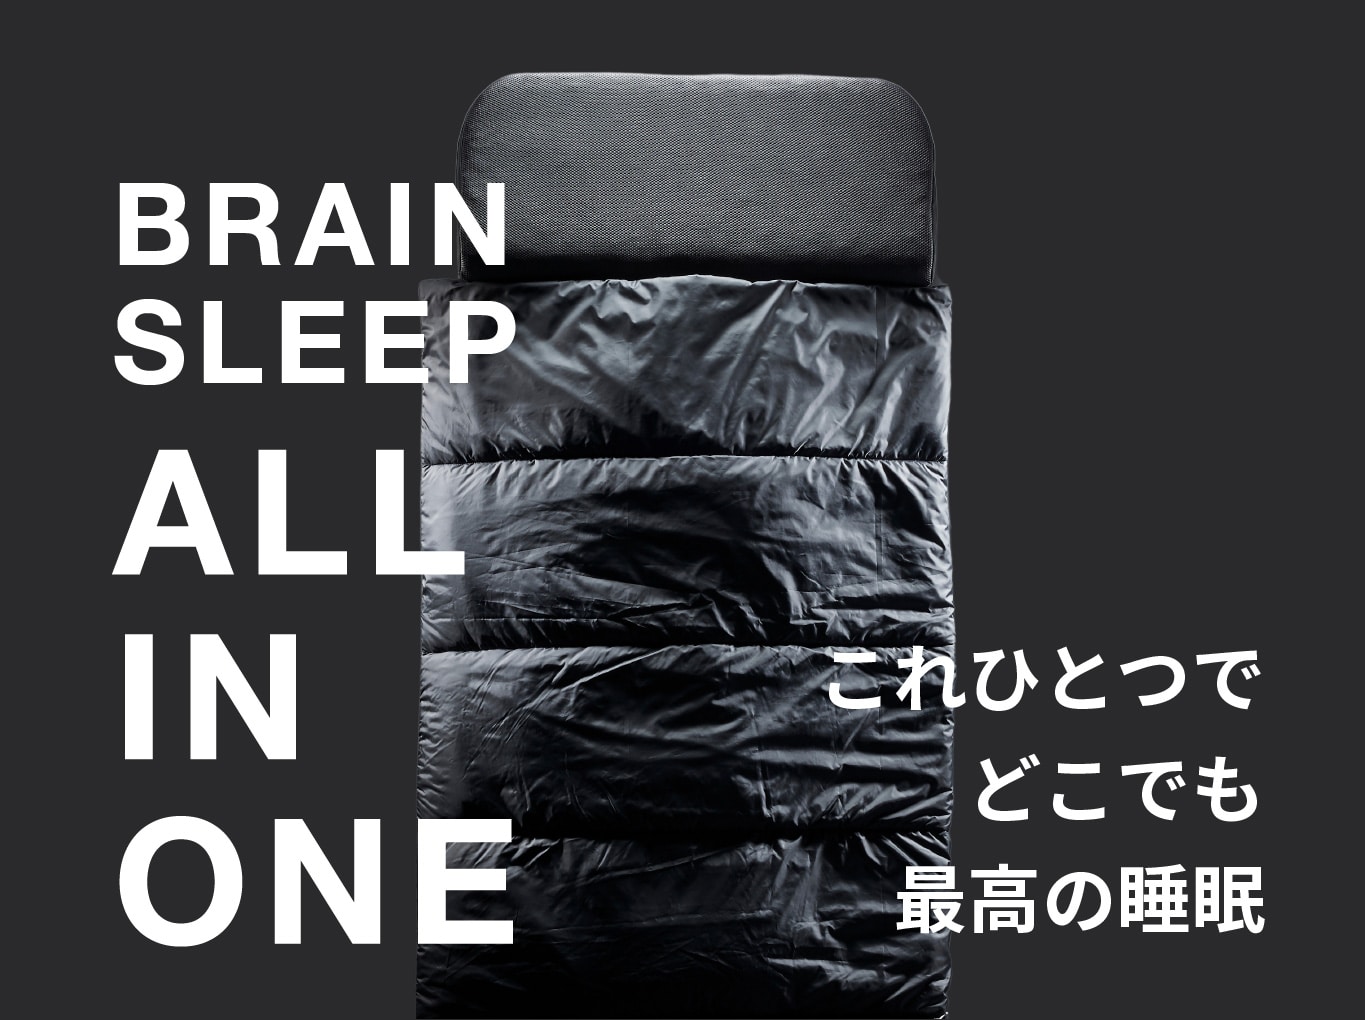 BRAINSLEEP ALL IN ONE - これひとつでどこでも最高の睡眠